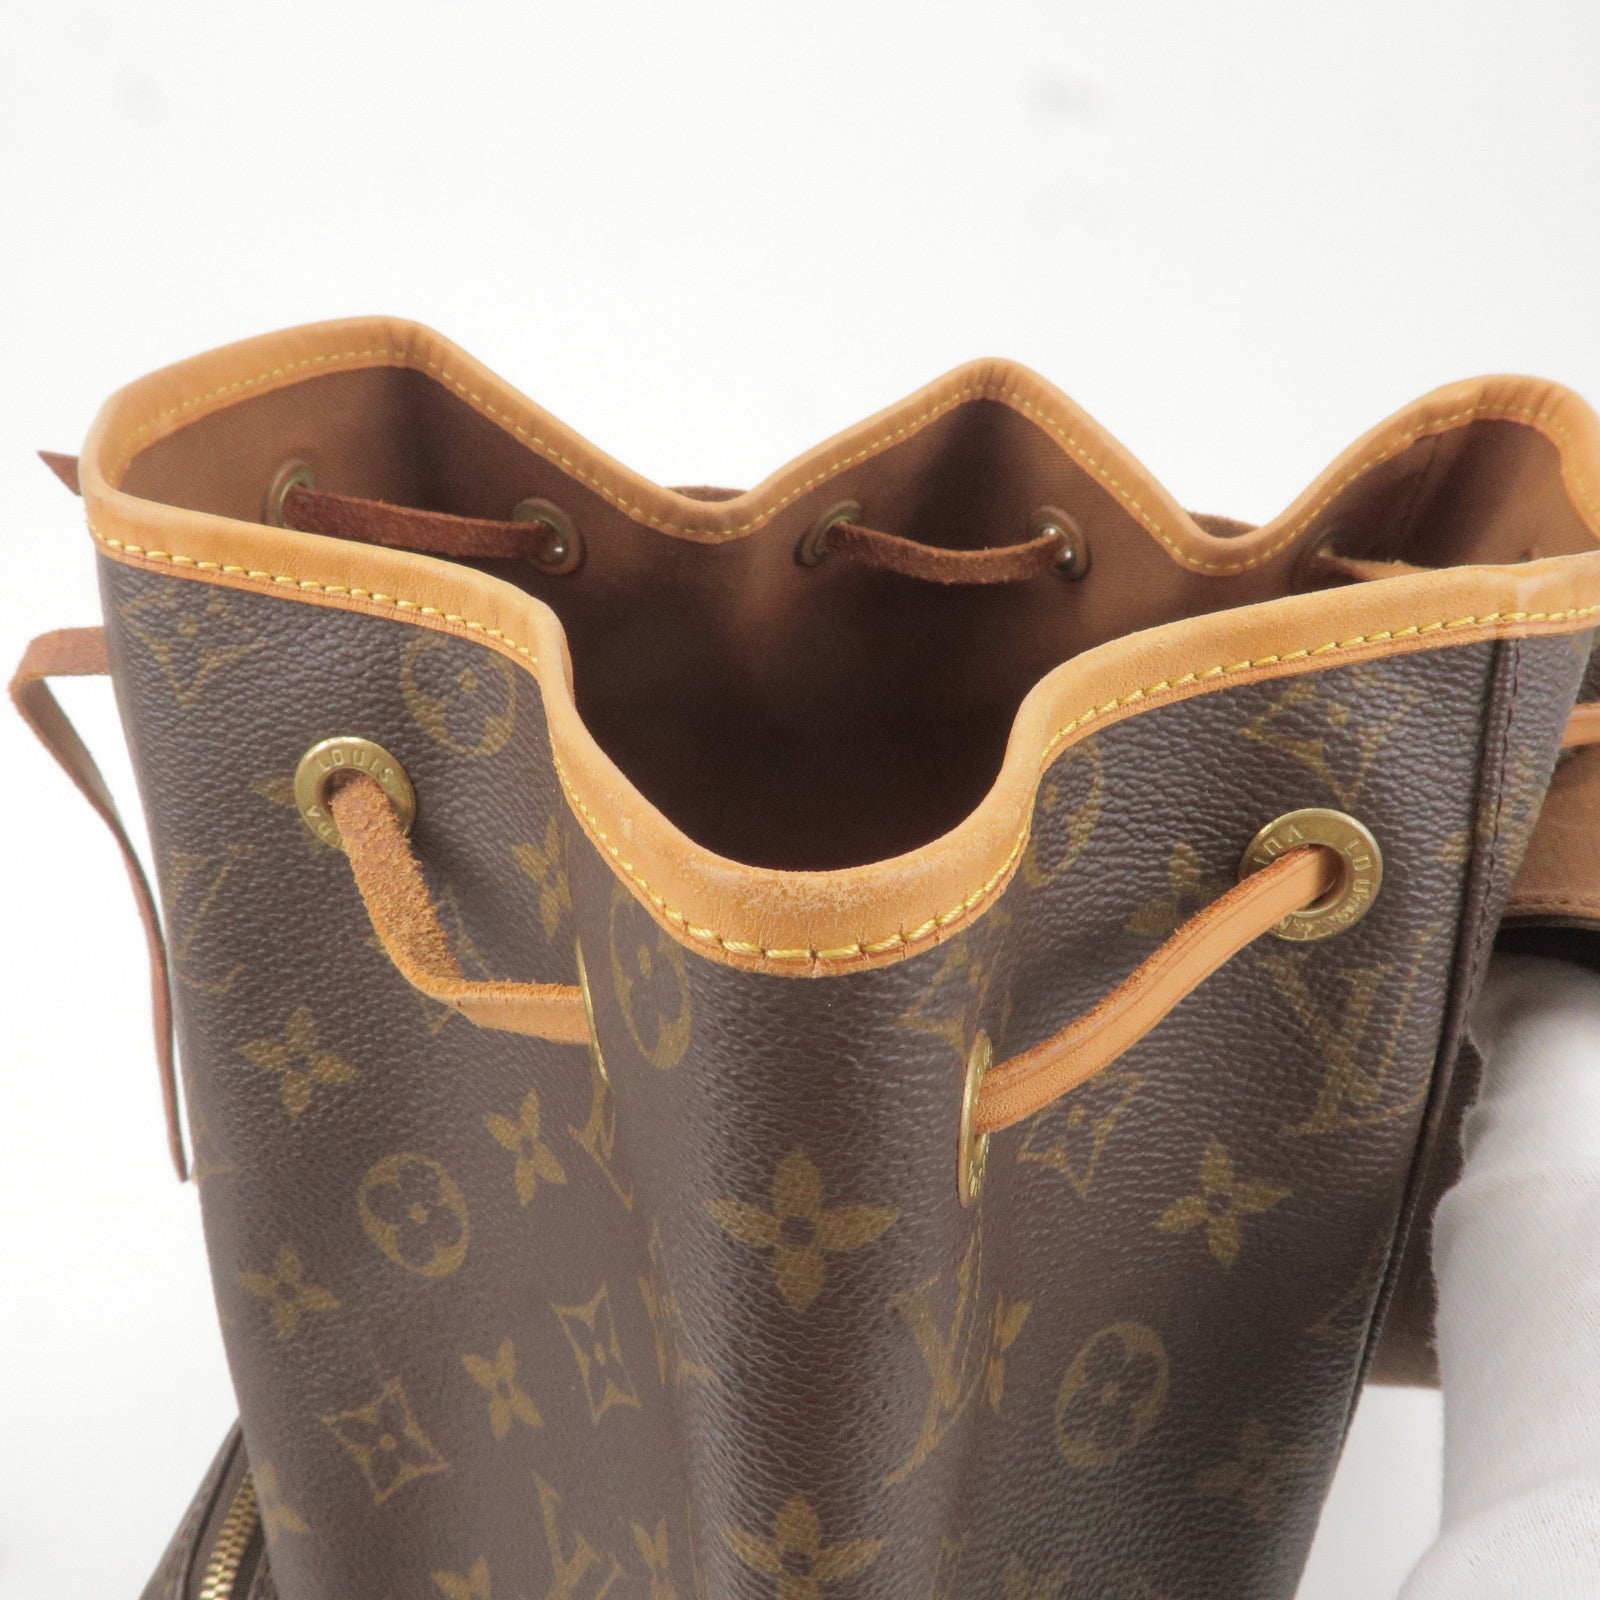 Louis Vuitton 2004 pre-owned Sologne Shoulder Bag - Farfetch